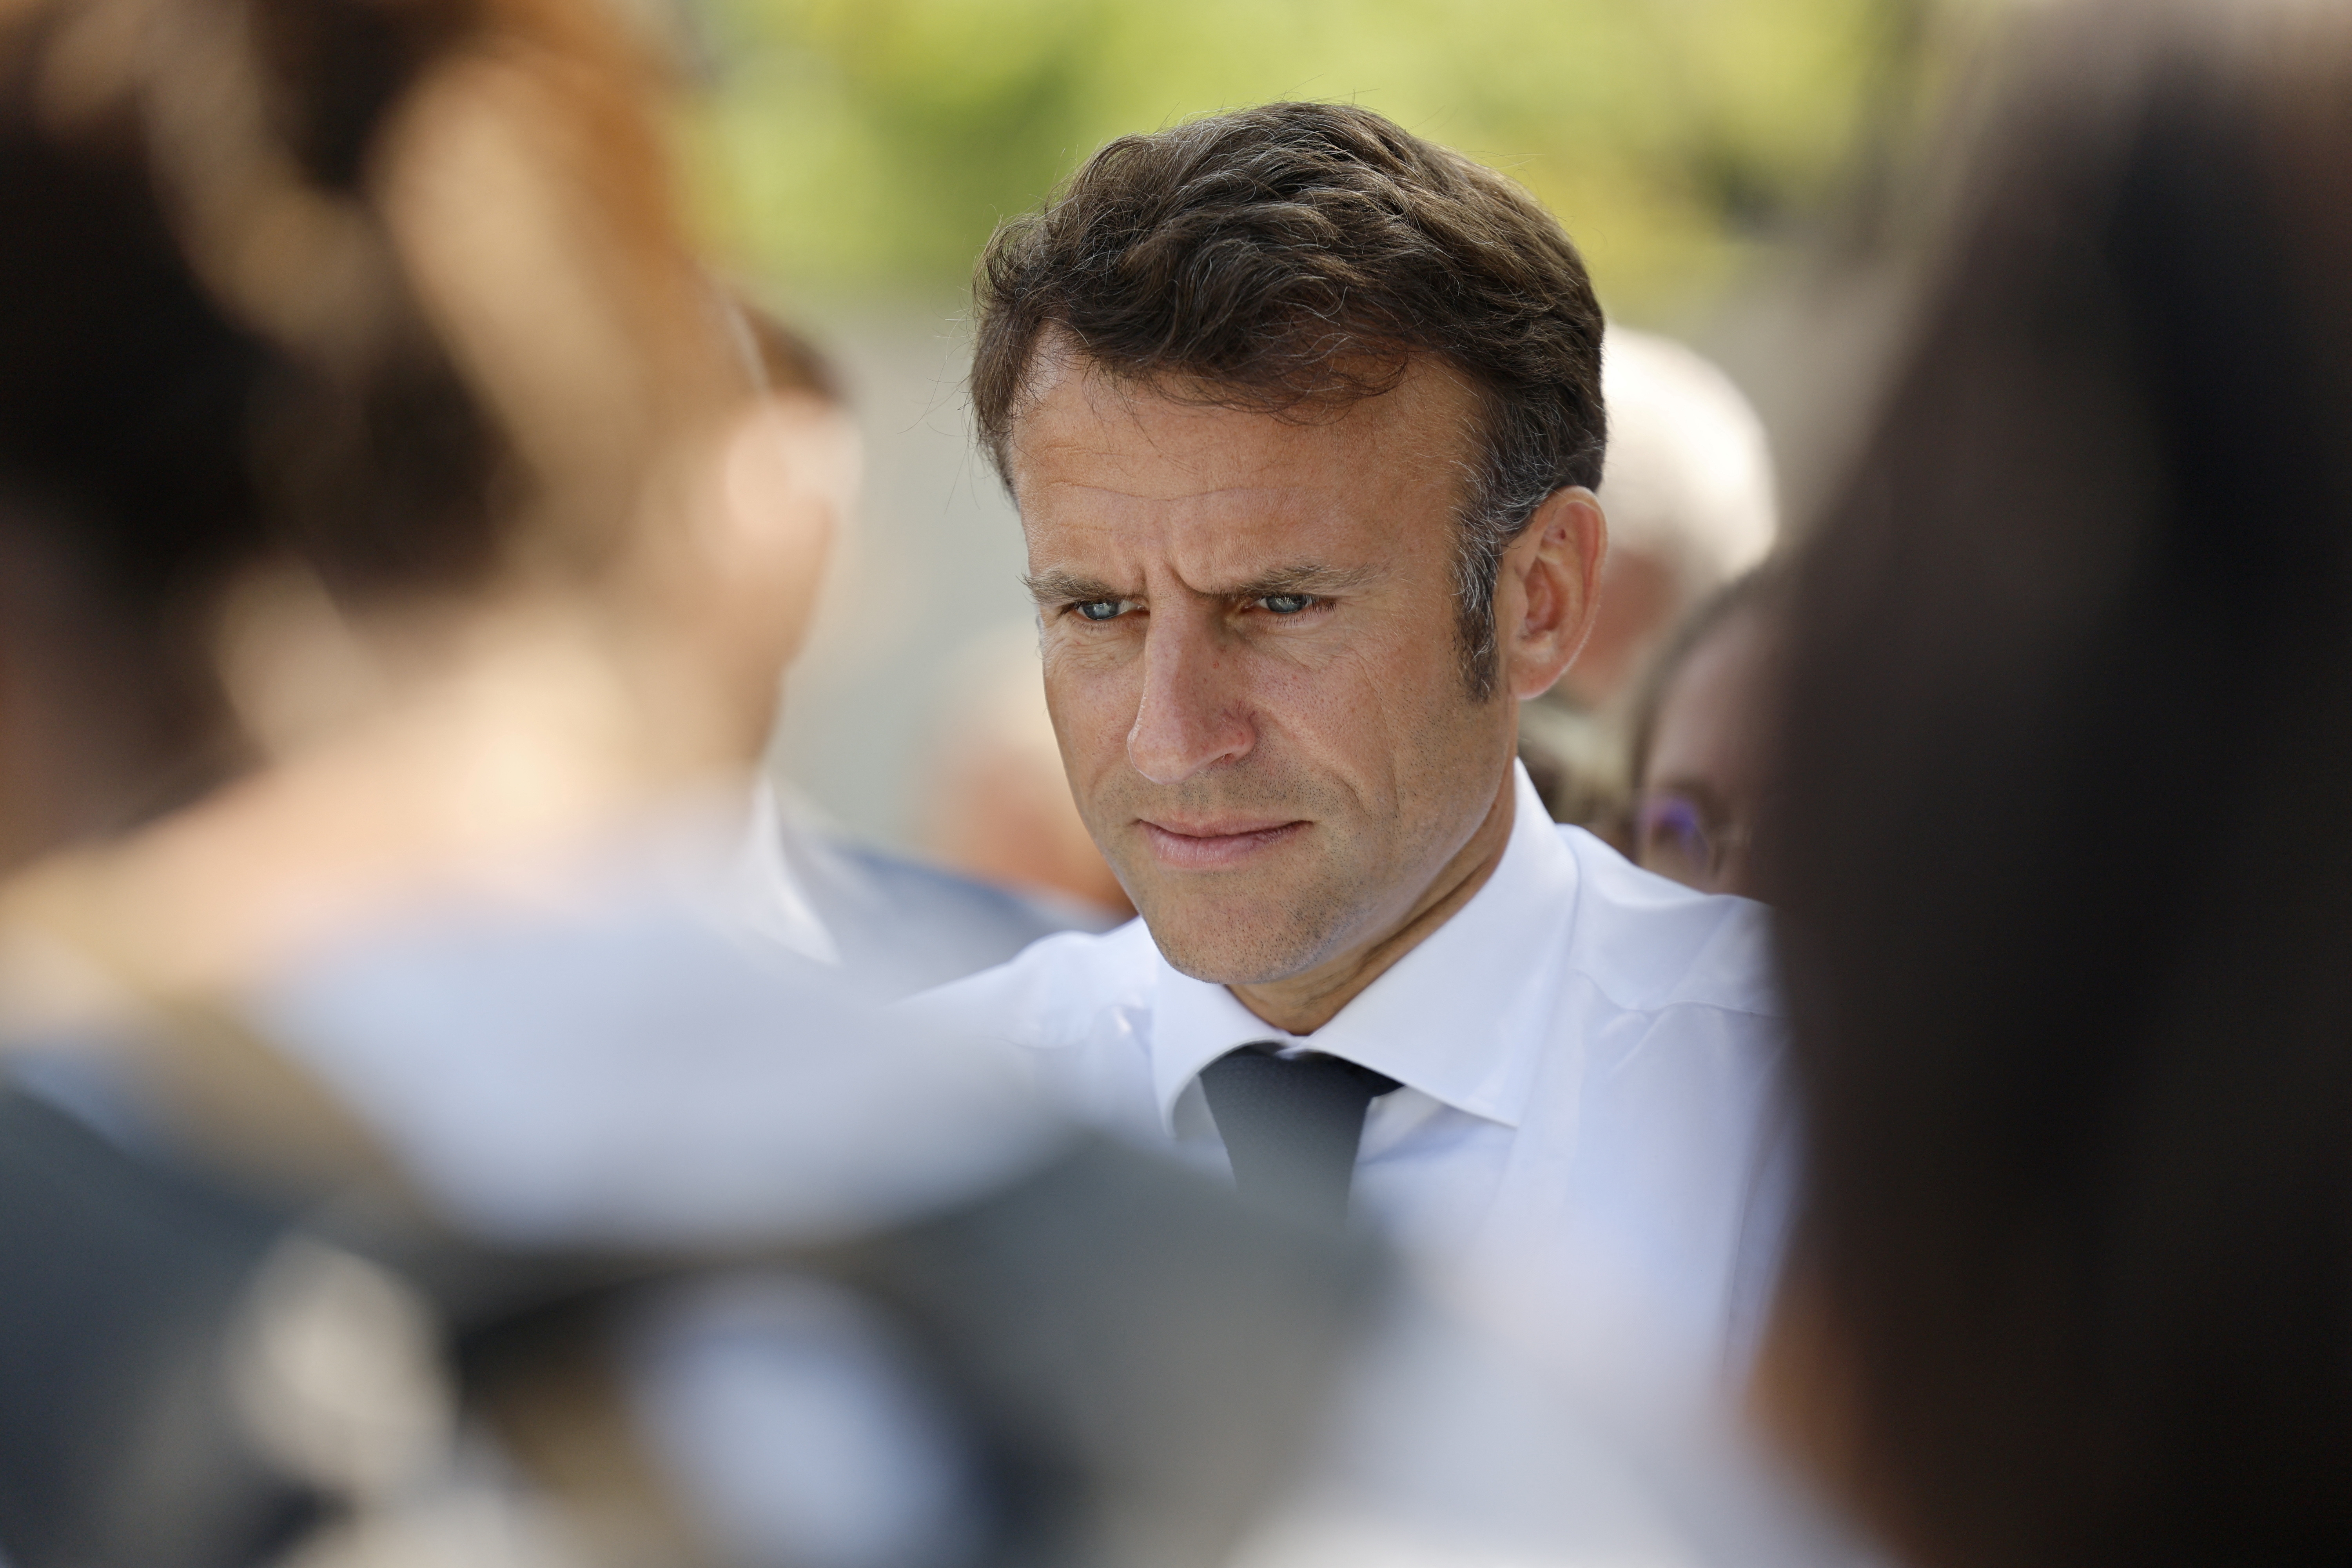 14 juillet : Emmanuel Macron ne fera pas d'entretien « bilan » des 100 jours mais prendra la parole dans les prochains jours